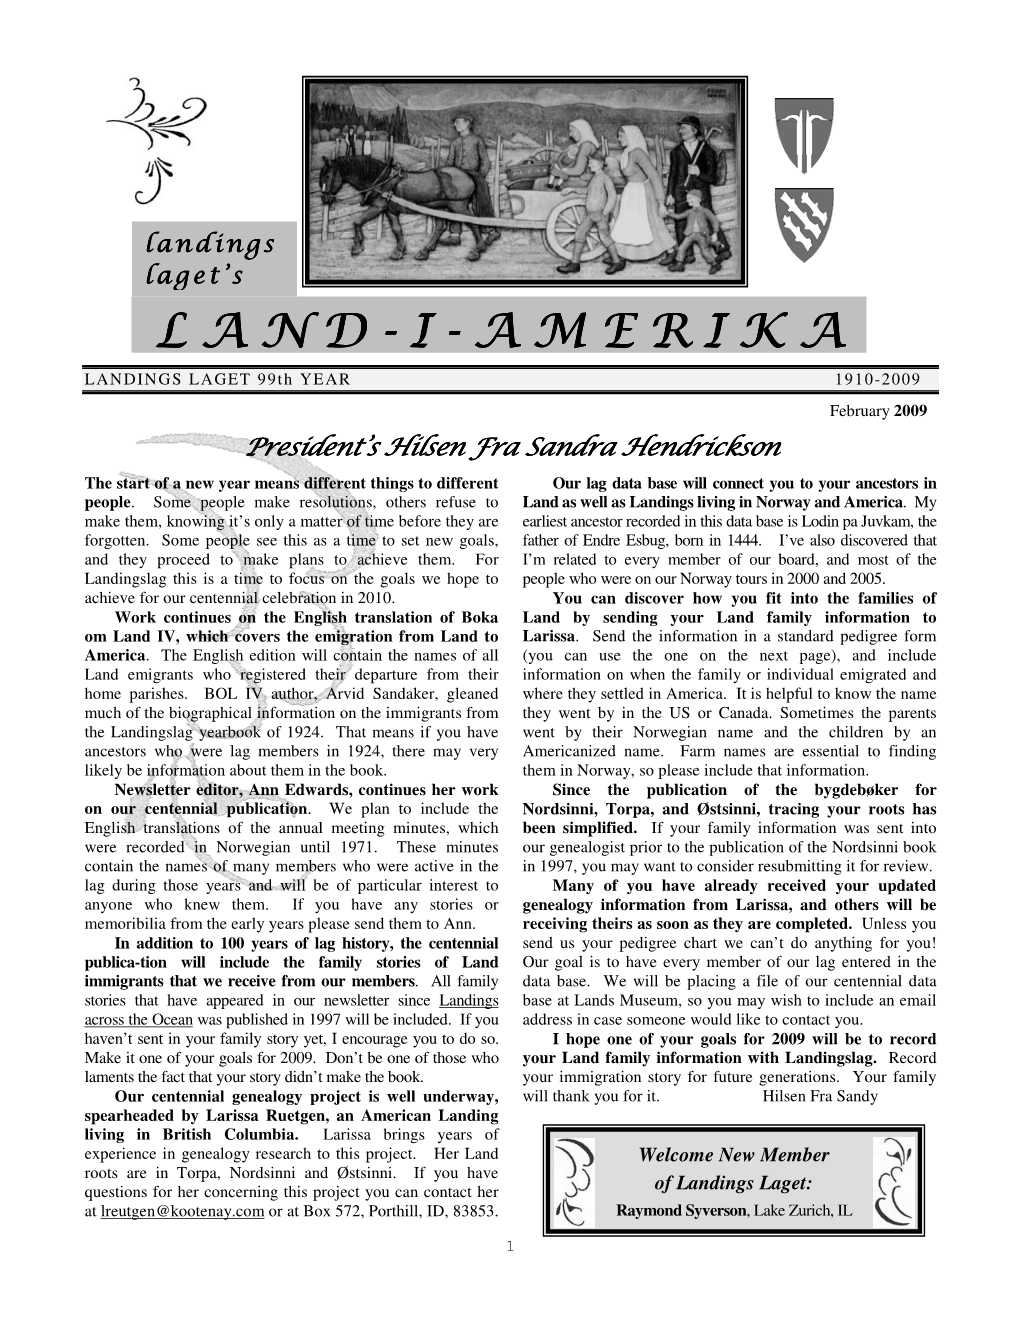 February 2009 Issue of Land I Amerika